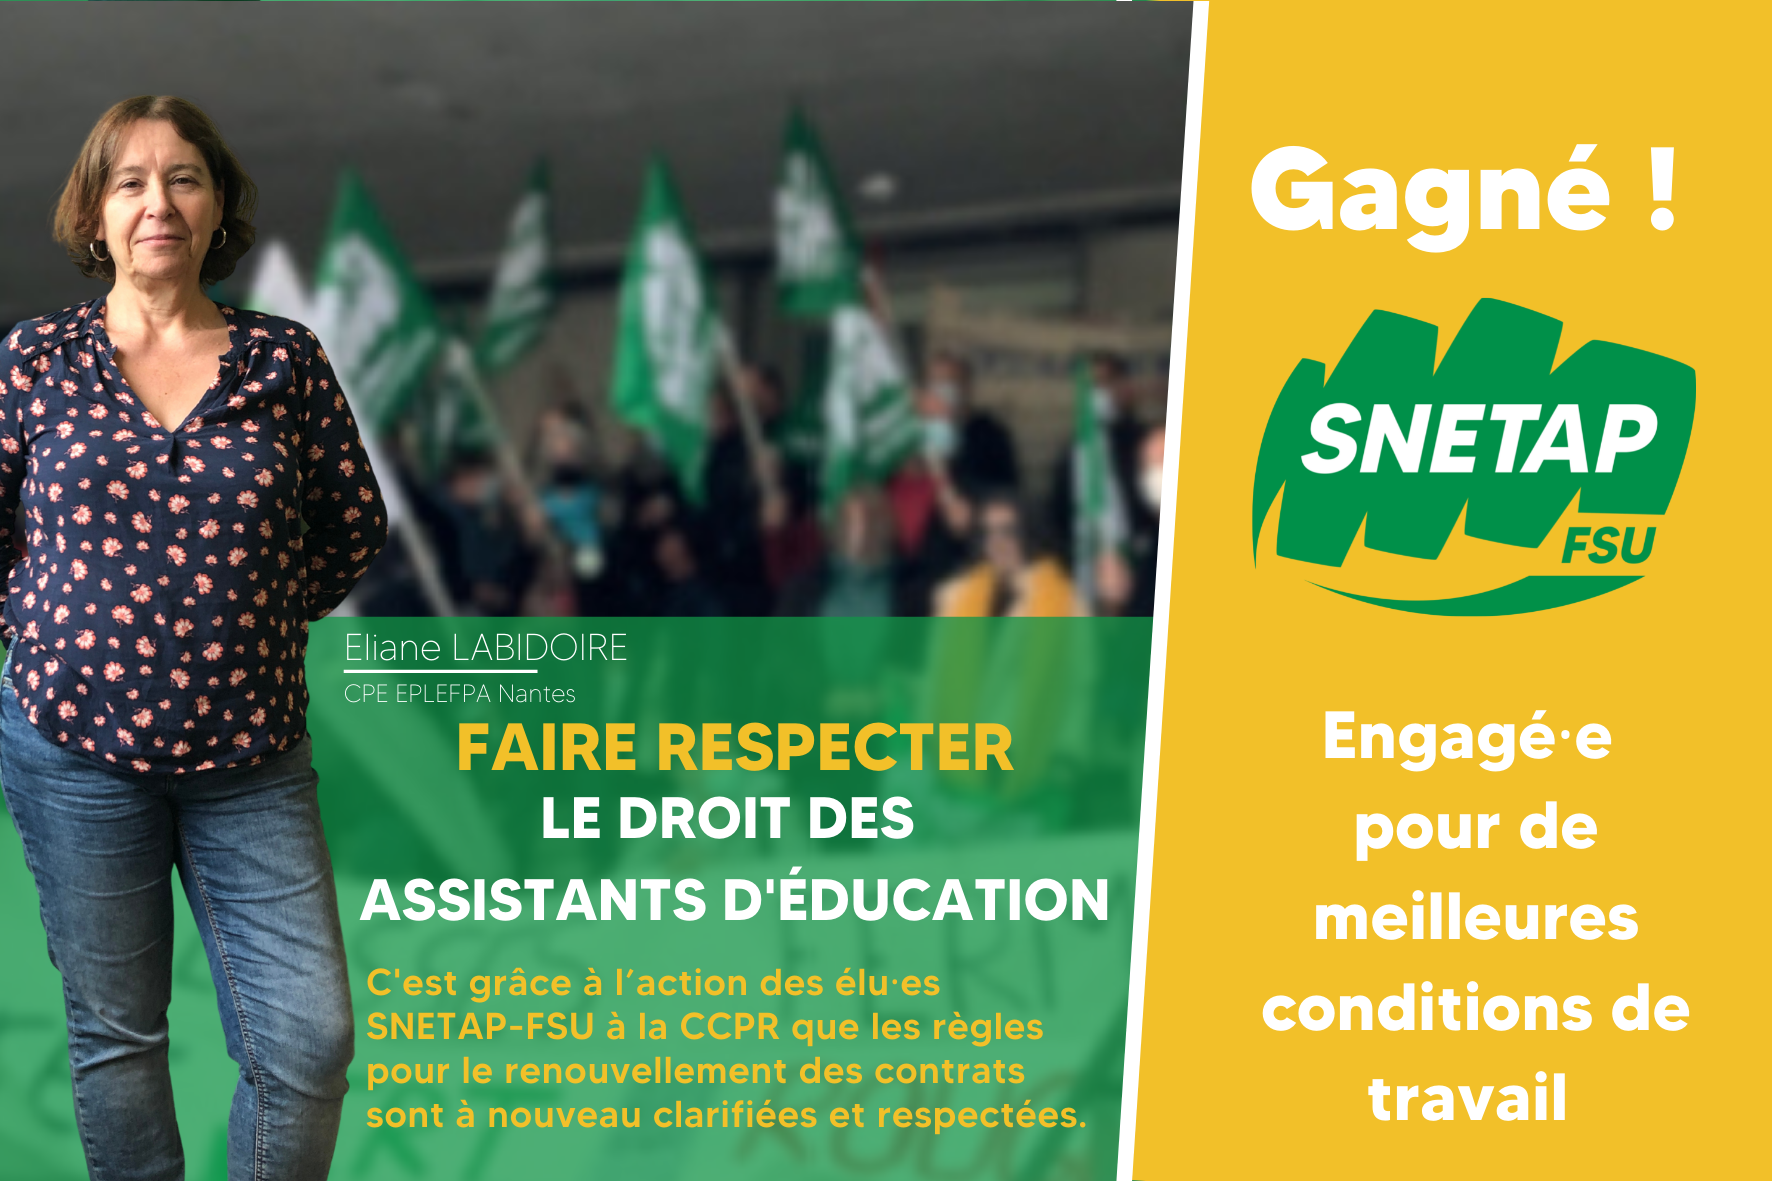 Lire la suite à propos de l’article Gagné ! Faire respecter le droit des assistants d’éducation !